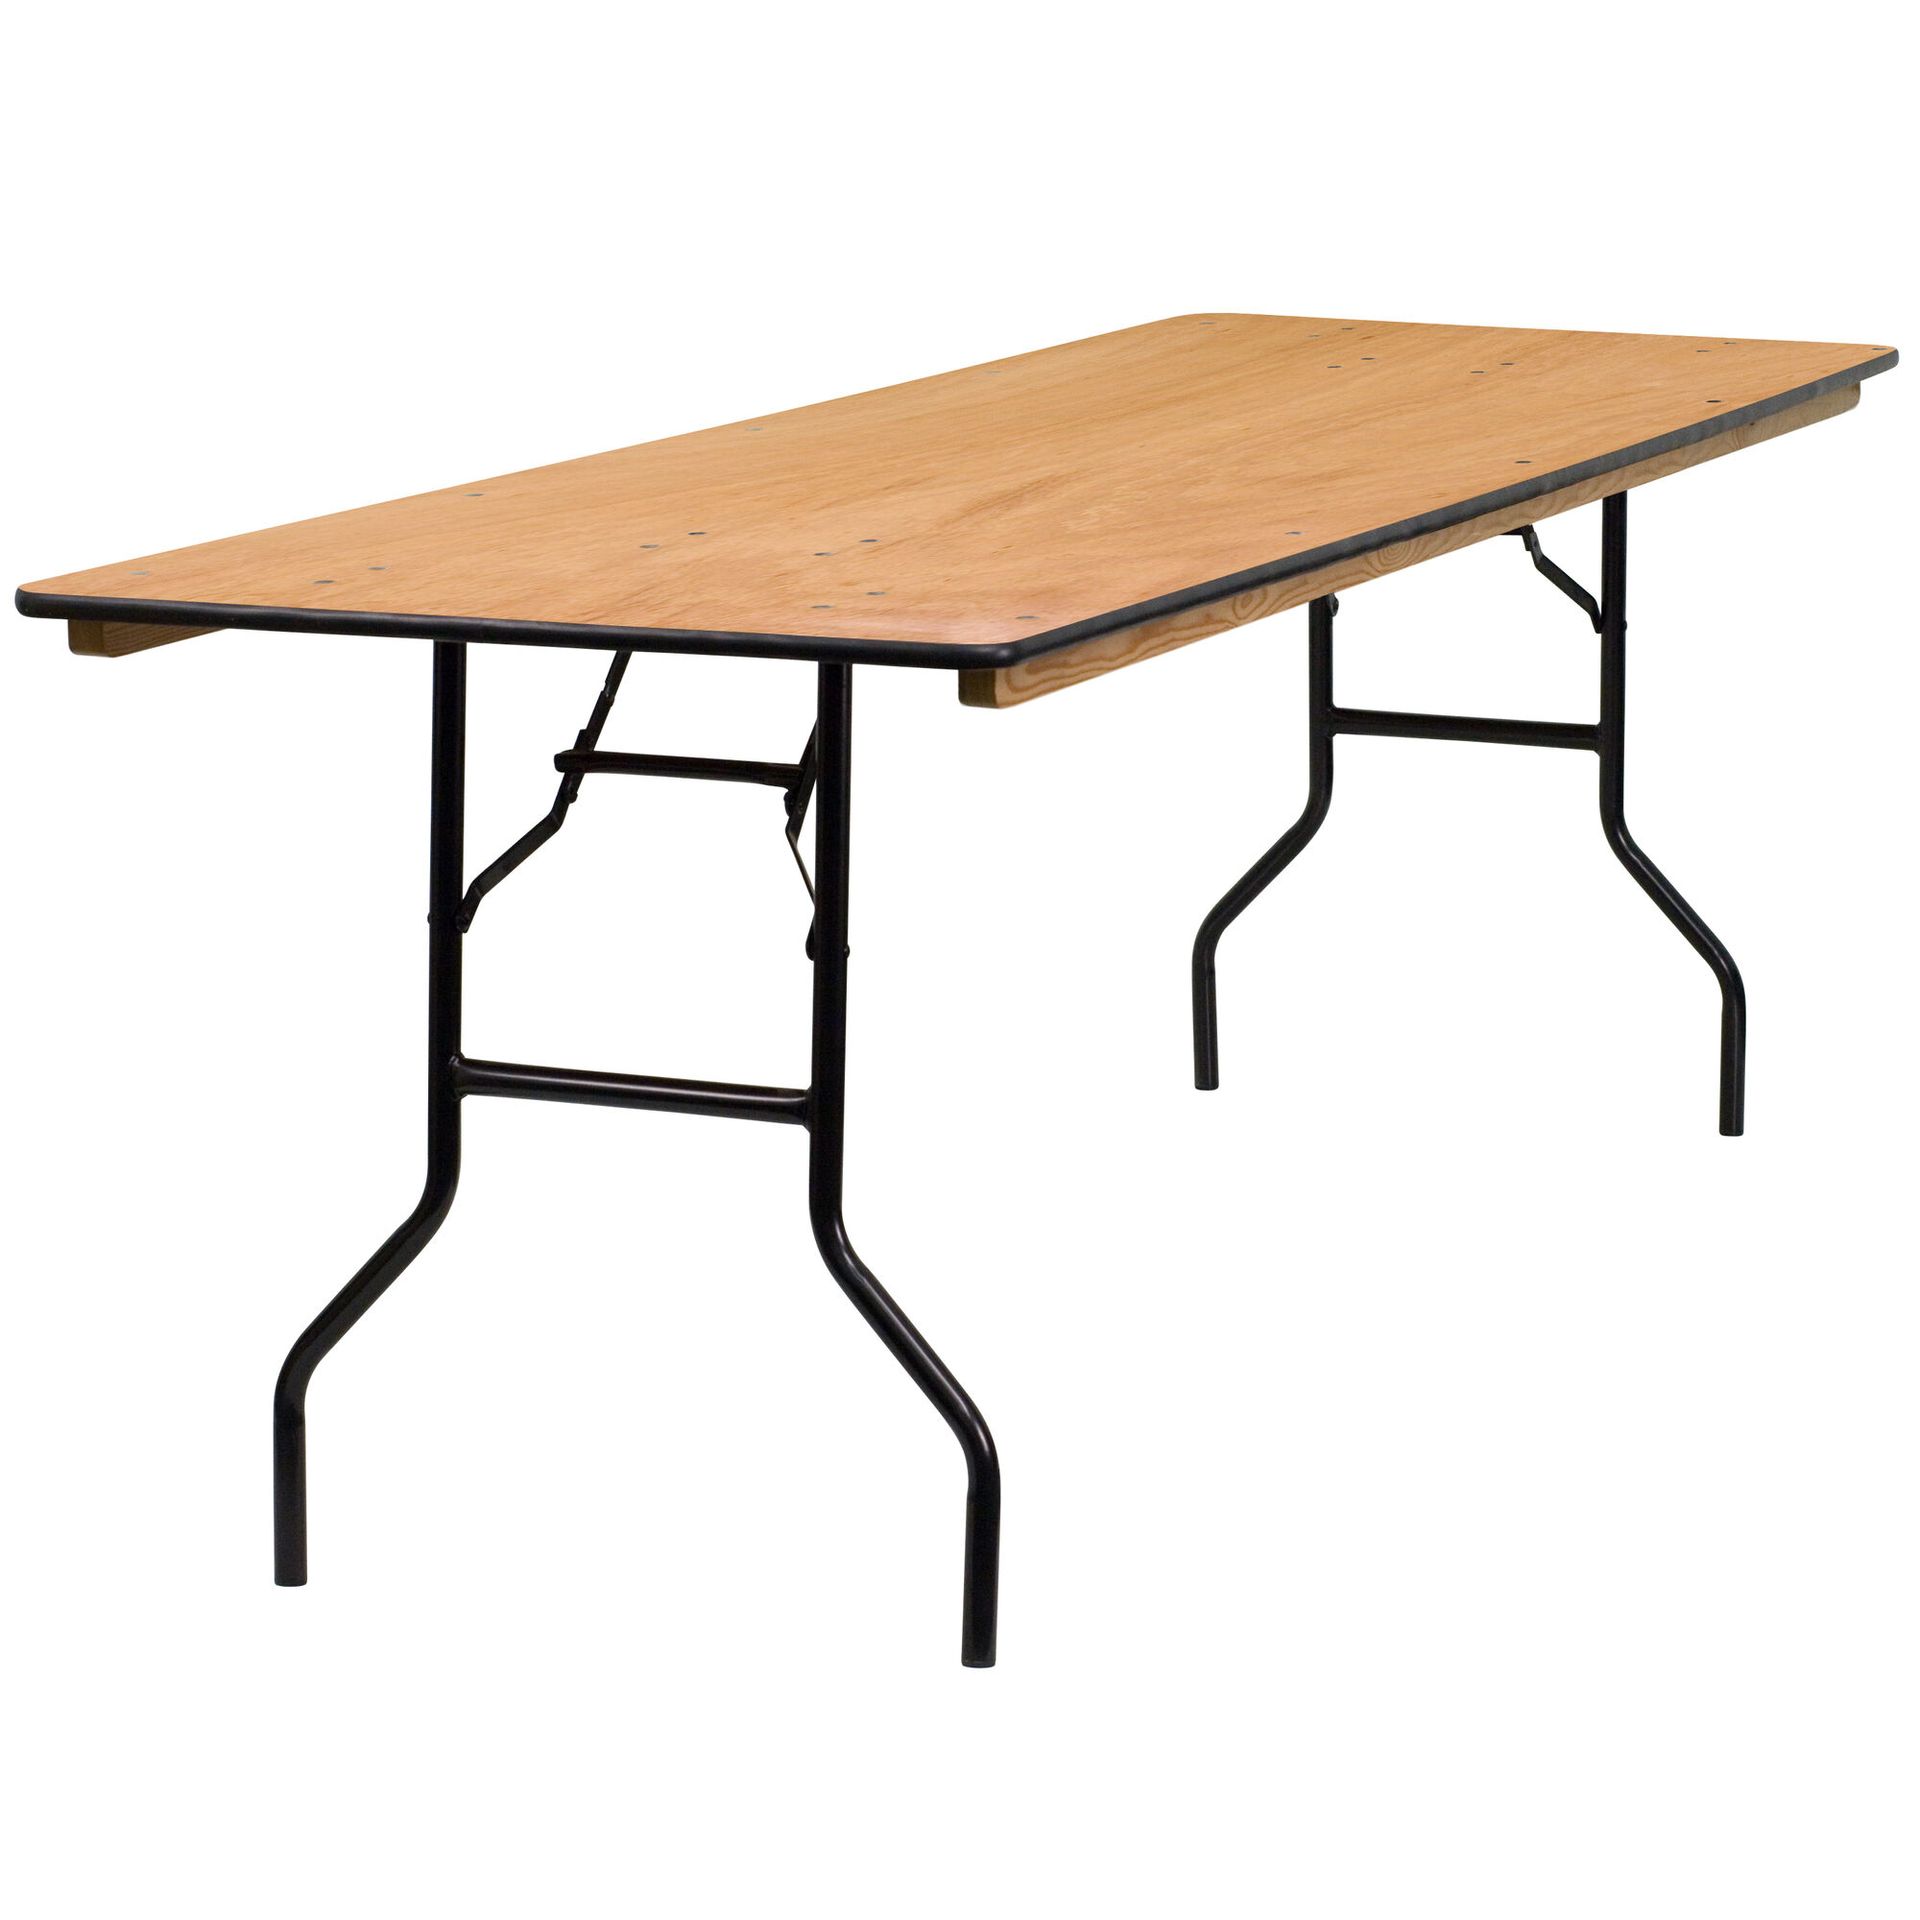 Une table pliante en bois avec pieds noirs sur fond blanc.